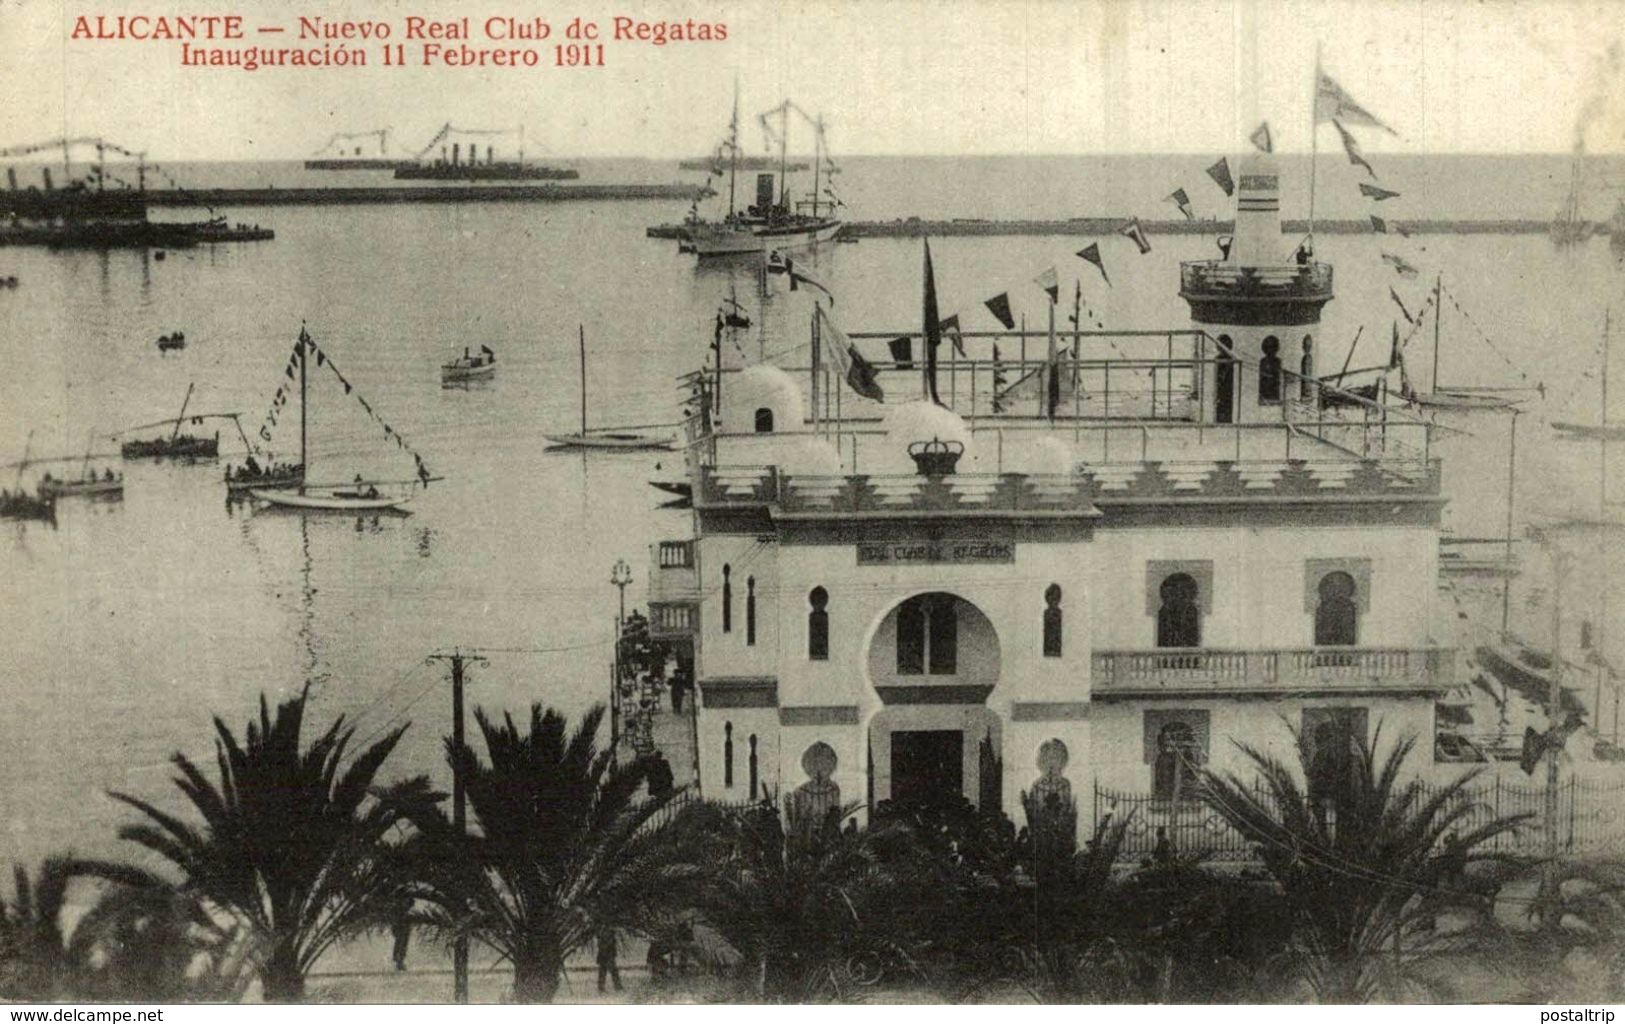 ALICANTE, NUEVO REAL CLUB DE REGATAS, INAUGURACION 11 FEBRERO 1911 - Alicante